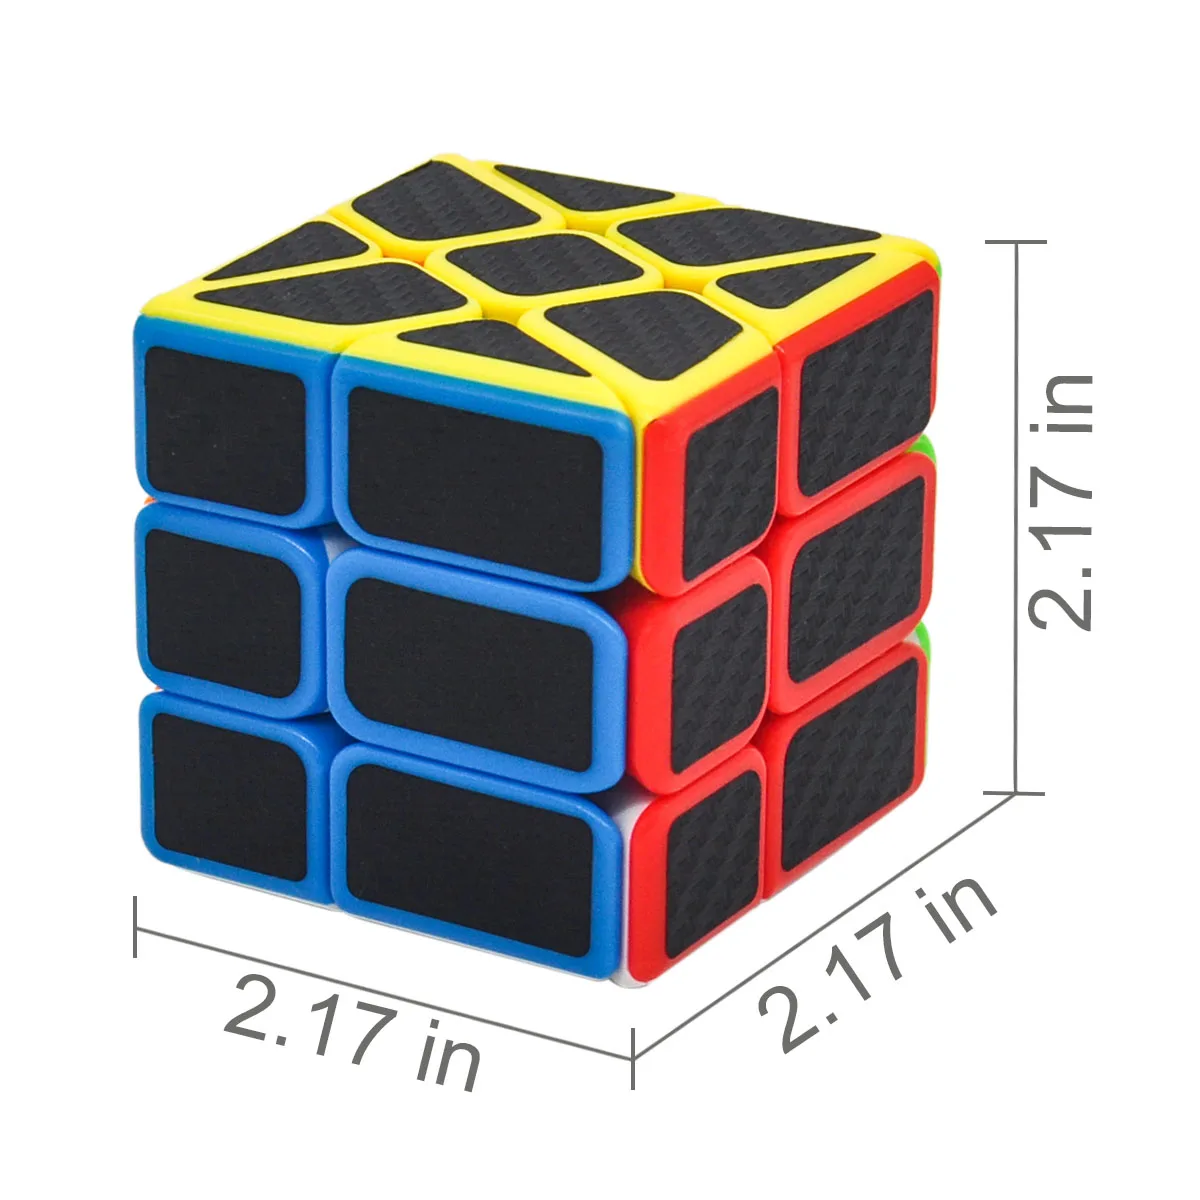 Скоростной магический куб, косой скоростной куб, Магический кубик, блок, головоломка, обучающие игрушки для детей, Cubo Magico